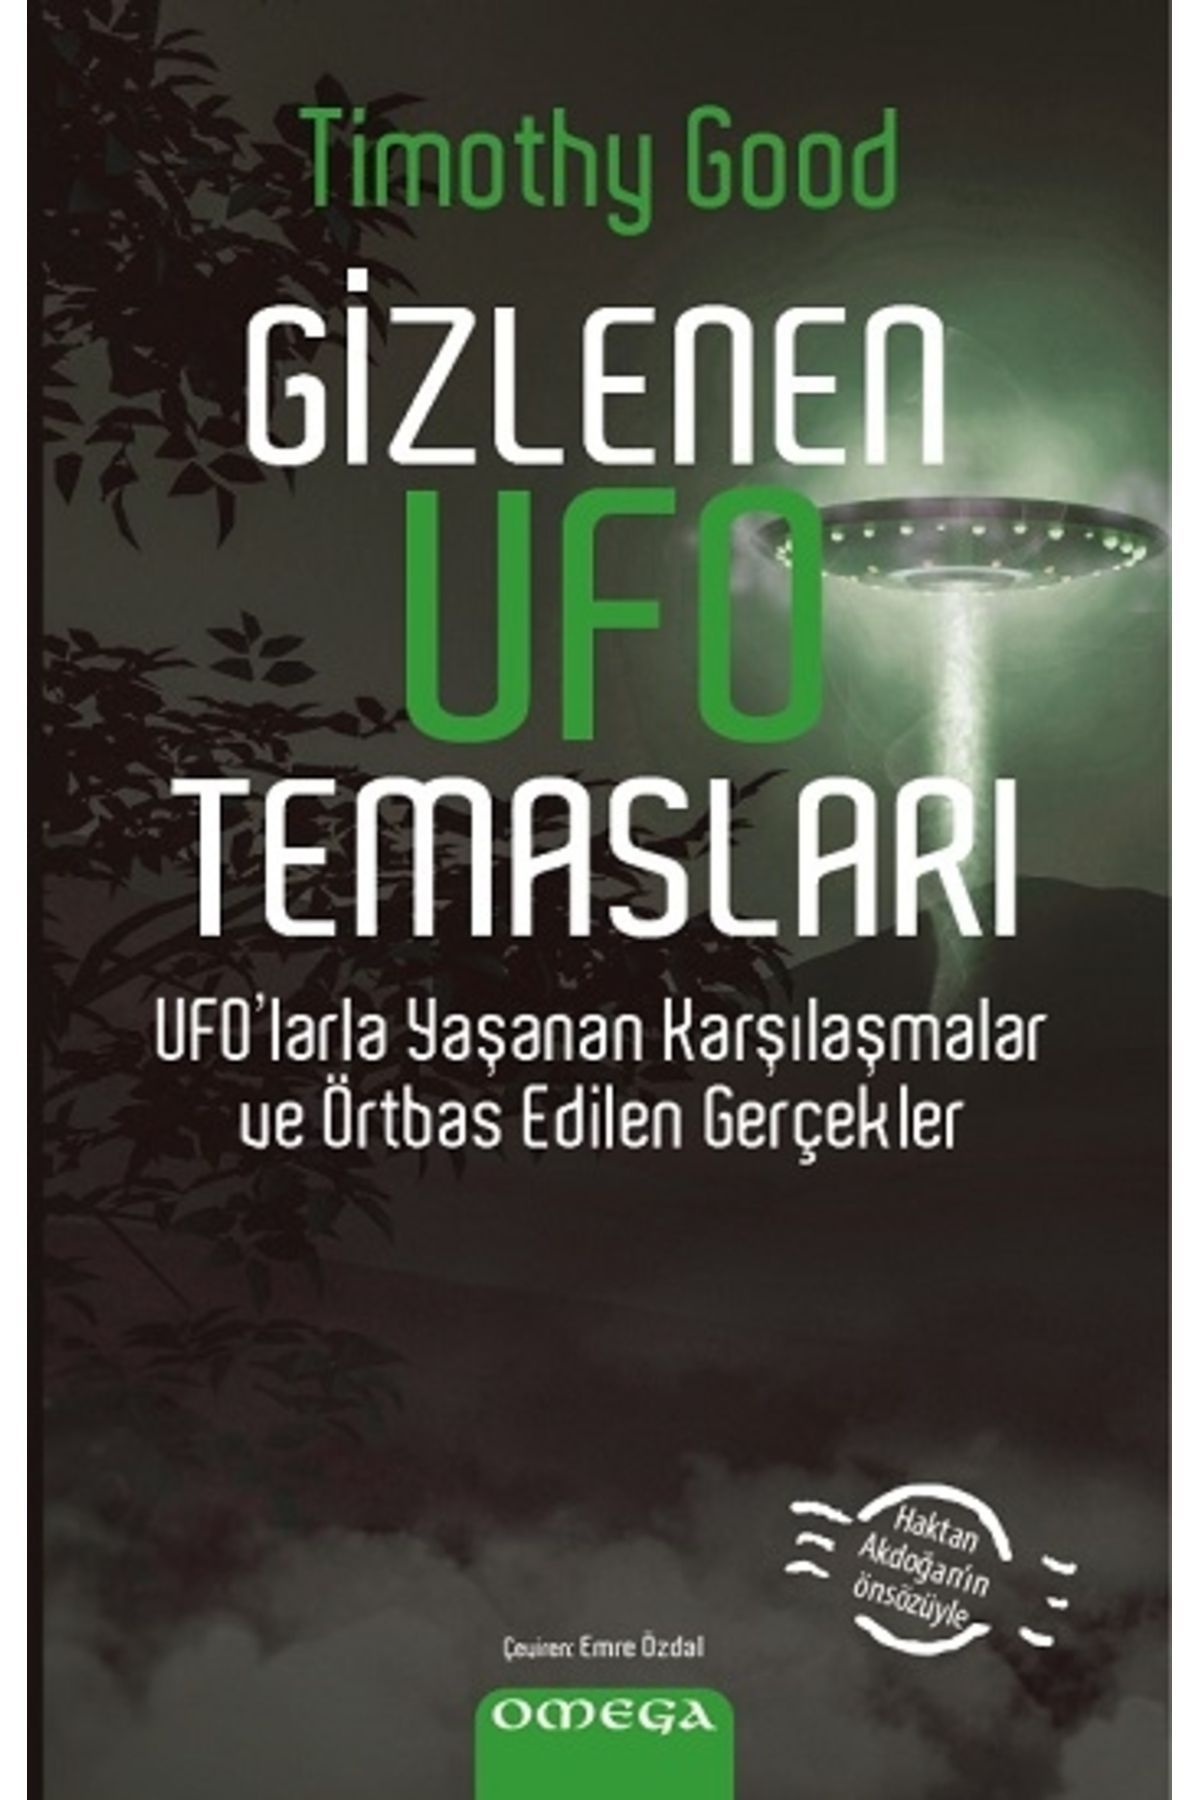 Genel Markalar Gizlenen Ufo Temasları